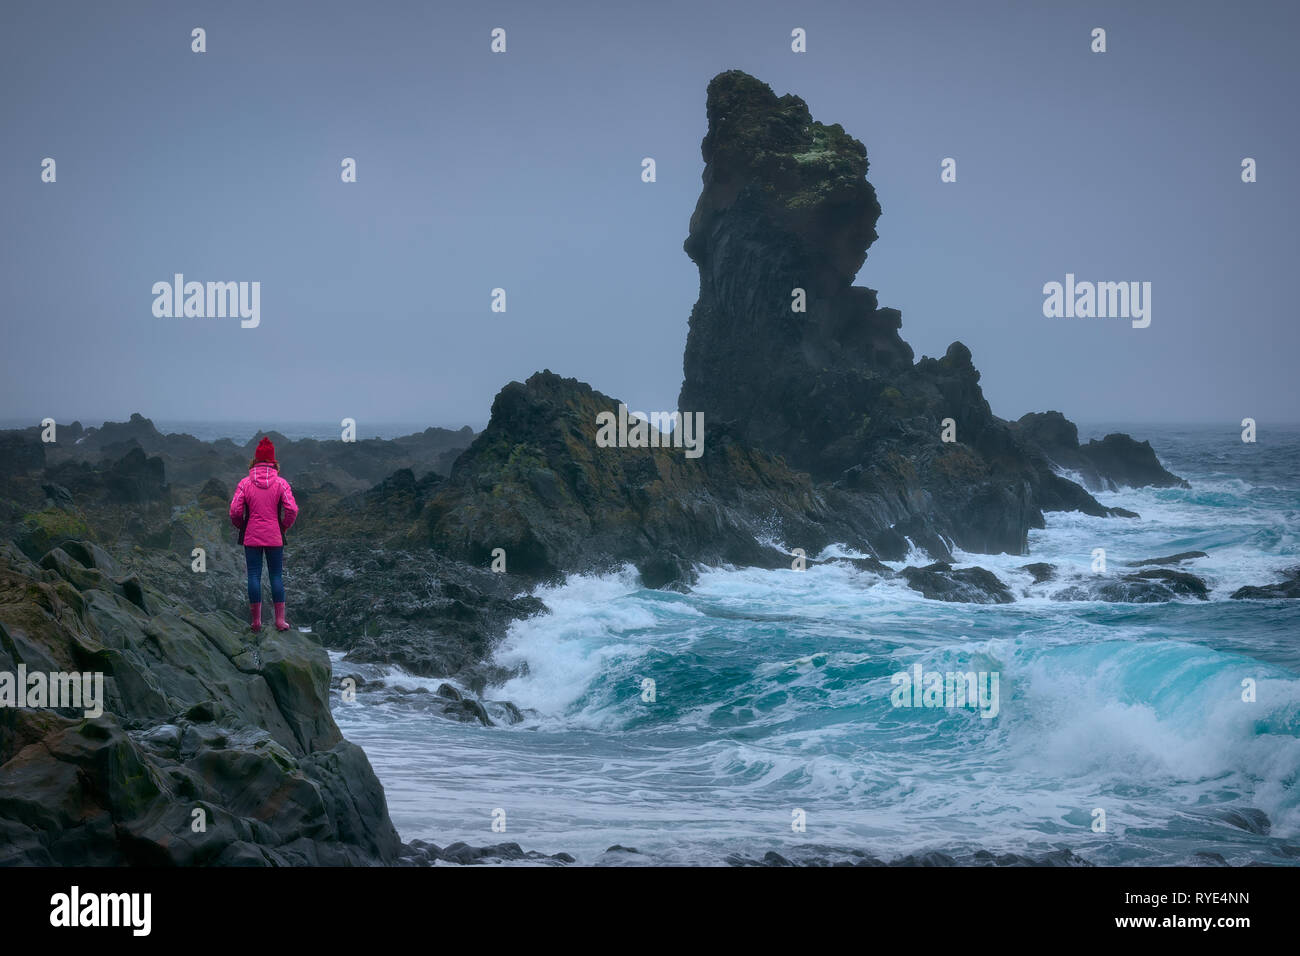 Photo de paysage de l'Islande et aventureux qui brave fille trônant fièrement en face de gros rocher près de vagues dangereuses à l'image. Banque D'Images